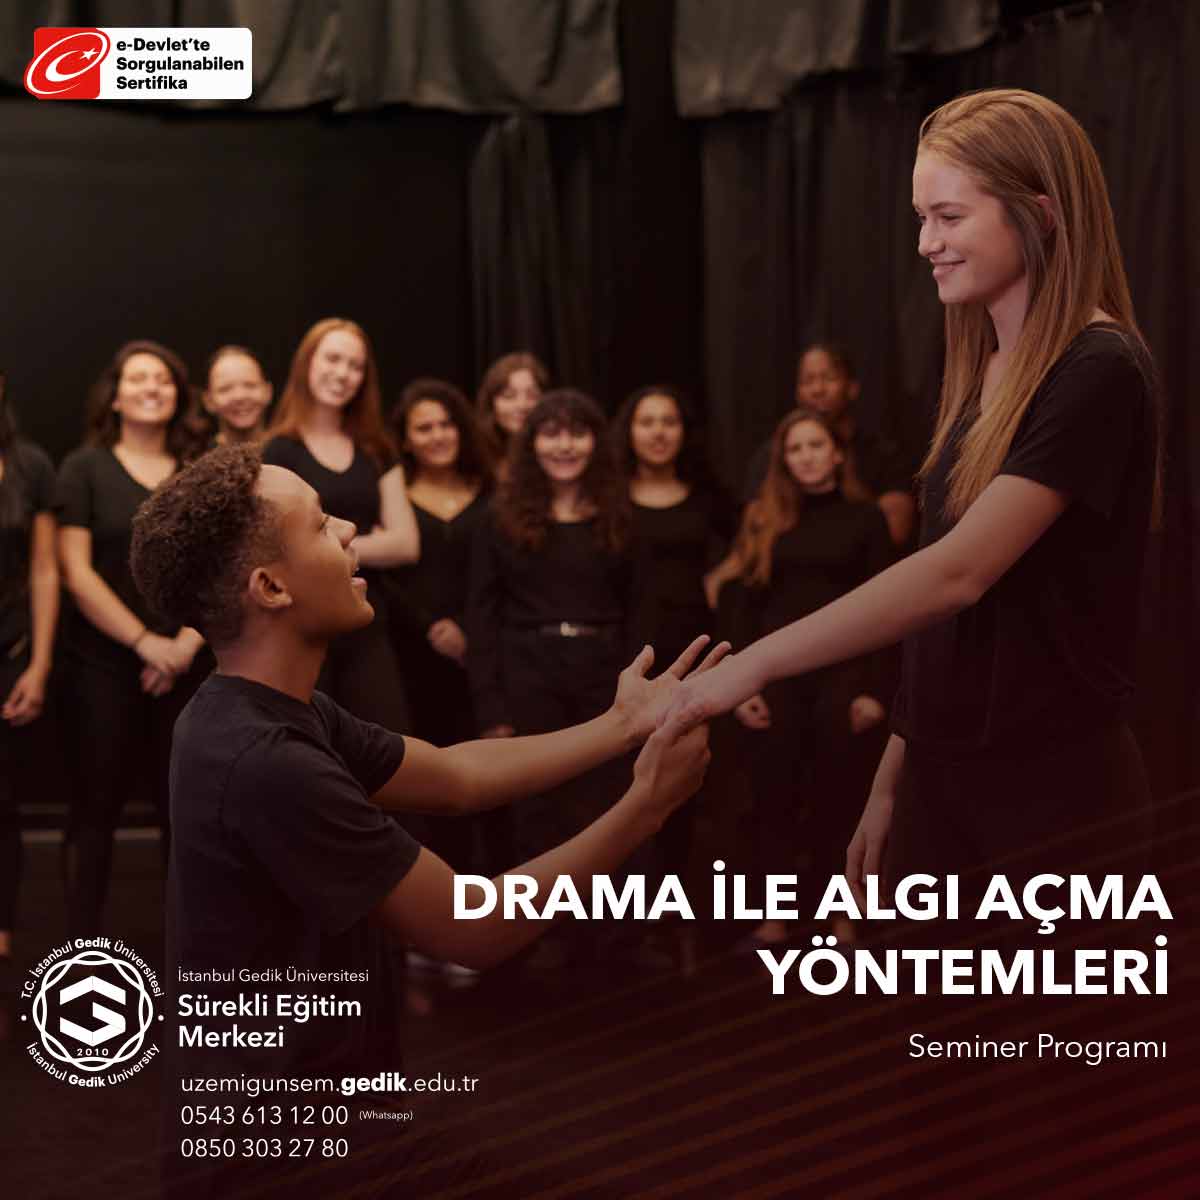 Seminer, katılımcılara drama sanatını kullanarak duygusal ifadeyi, iletişimi ve algıyı derinleştirme konusunda pratik beceriler sunmaktadır.